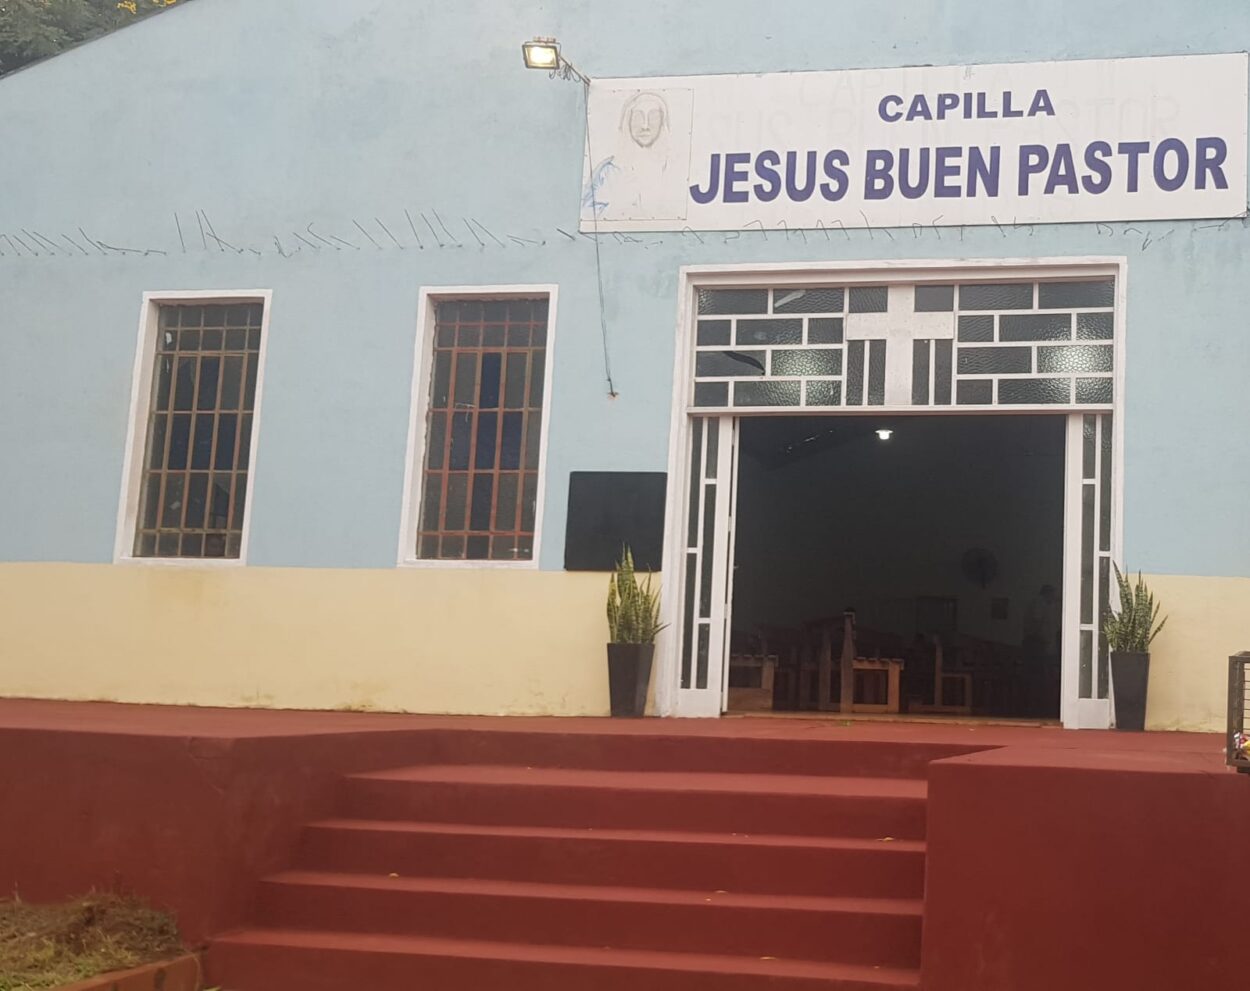 Capilla “Jesús Buen Pastor” celebrará su fiesta patronal este domingo 21 imagen-7